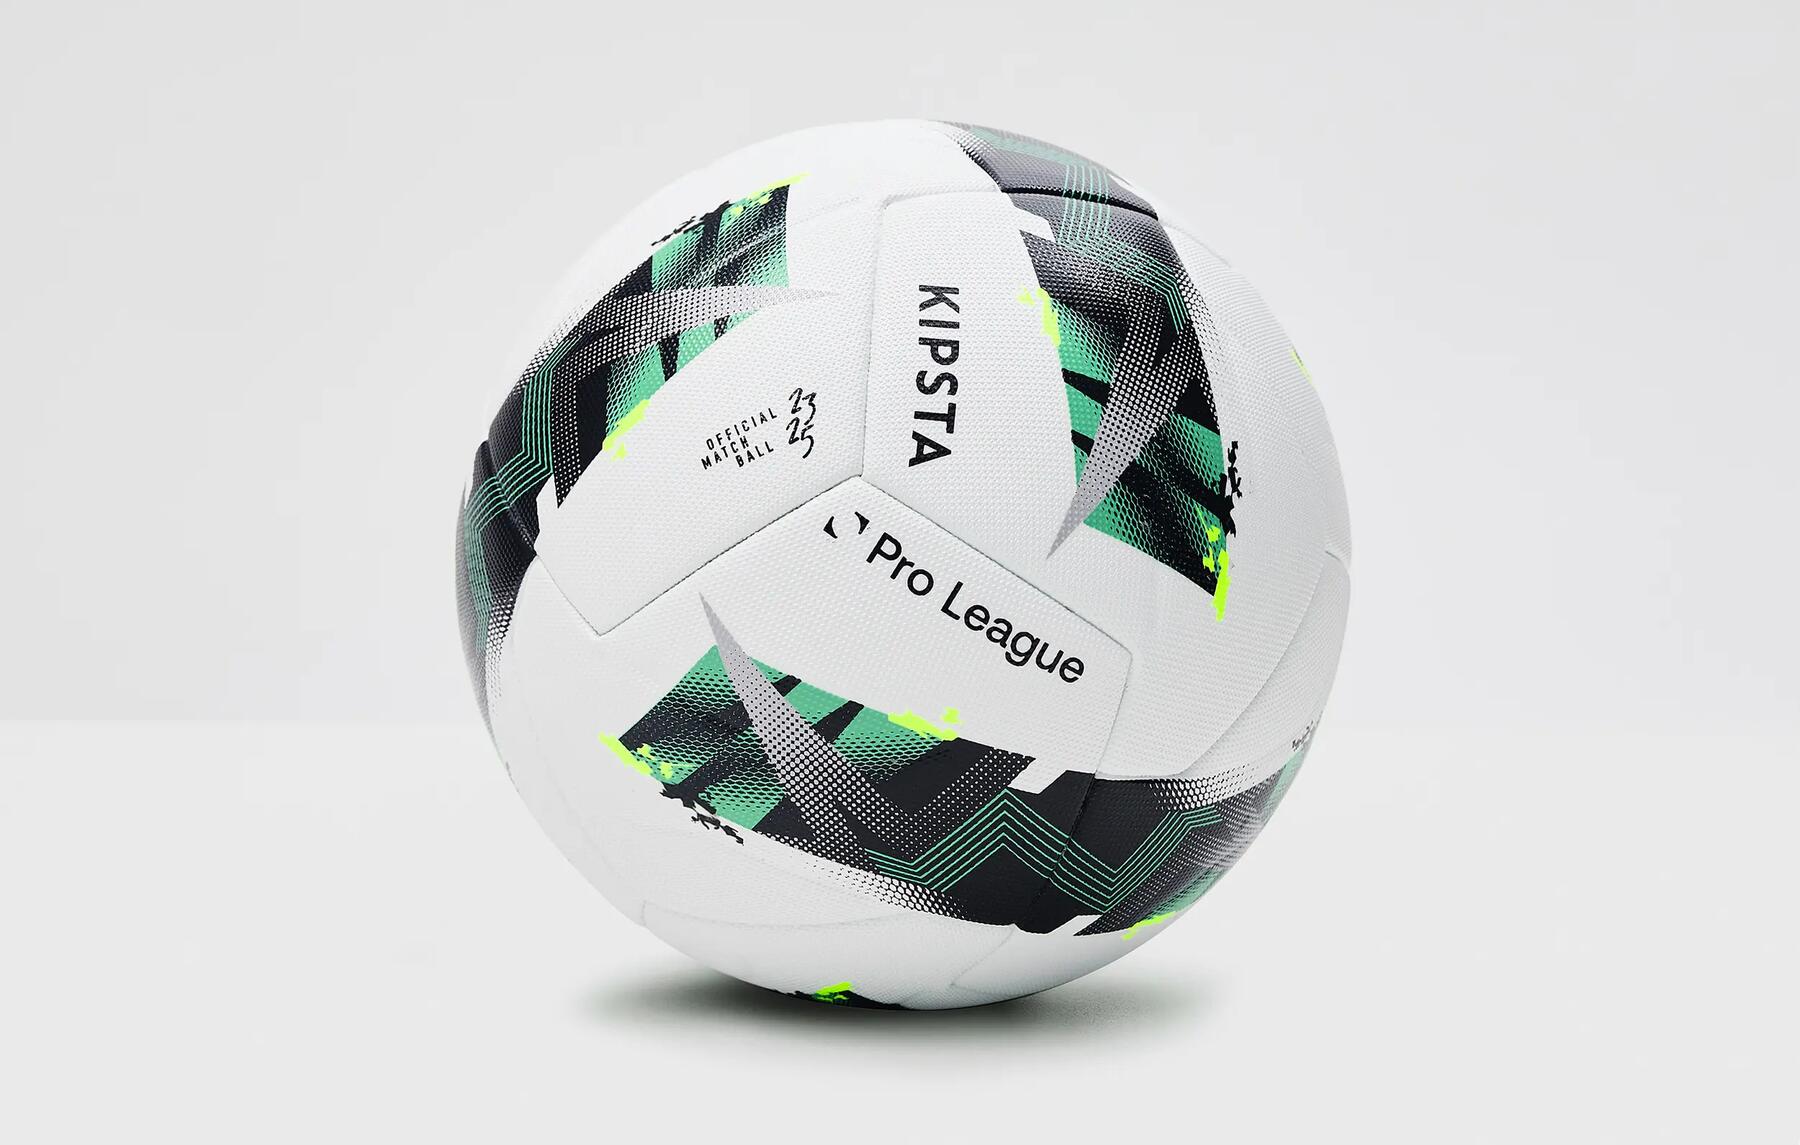 Le ballon officiel du Pro League de Kipsta